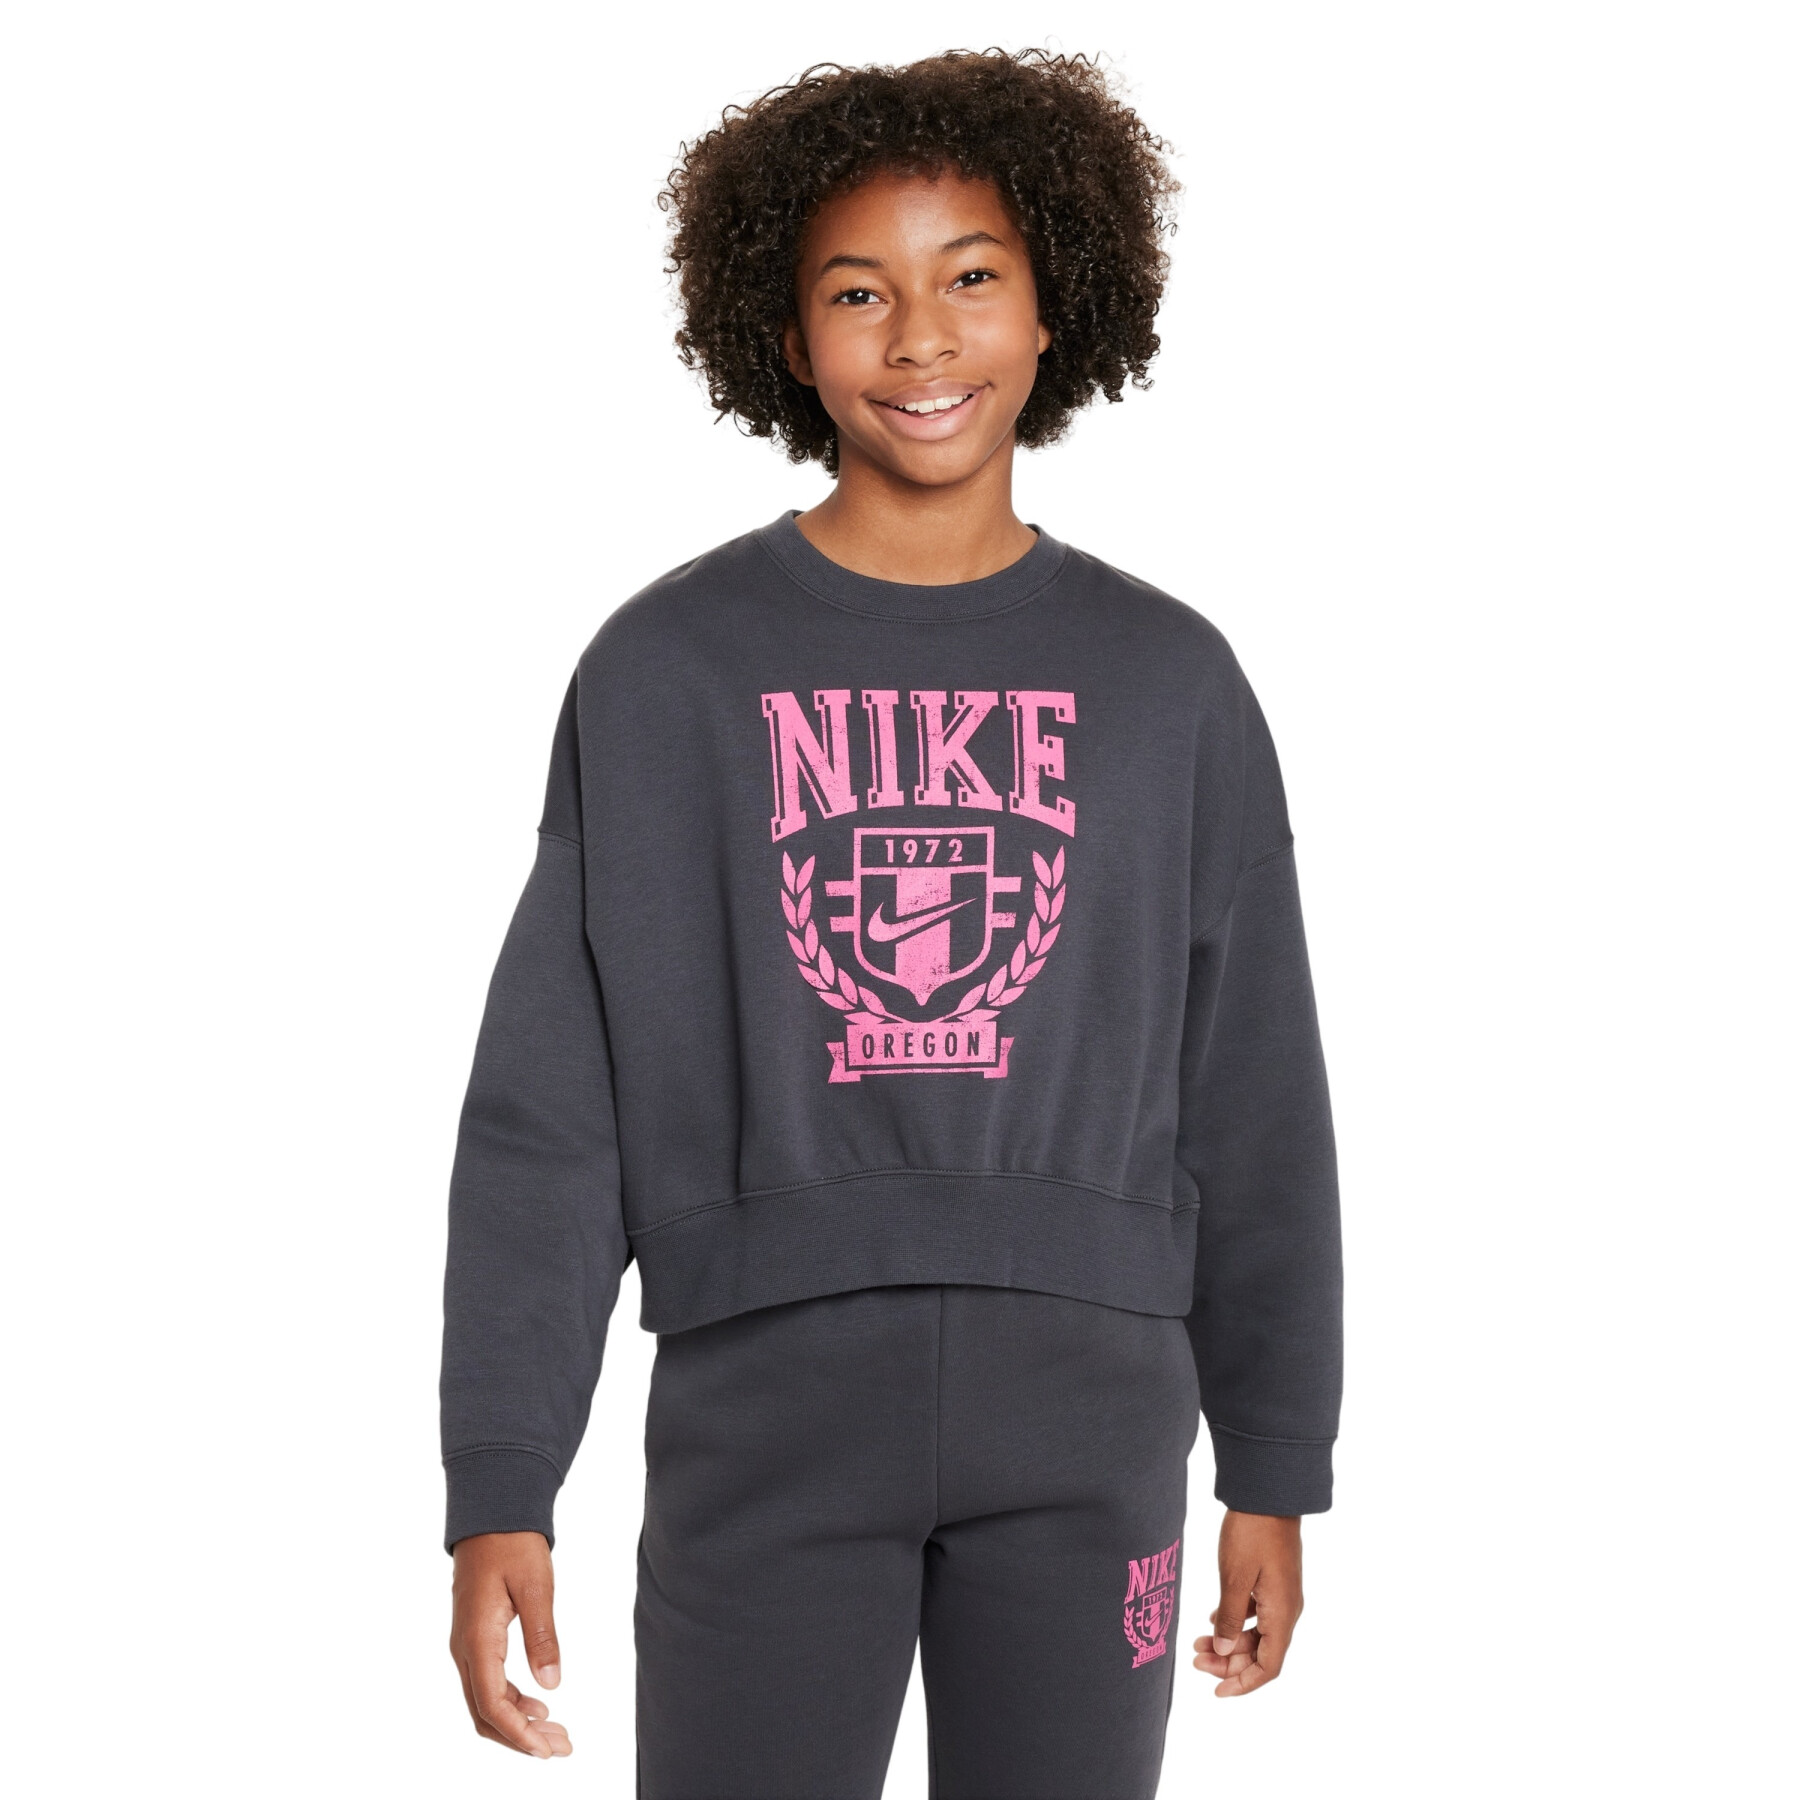 Meisjes Sweatshirt Nike Trend Print